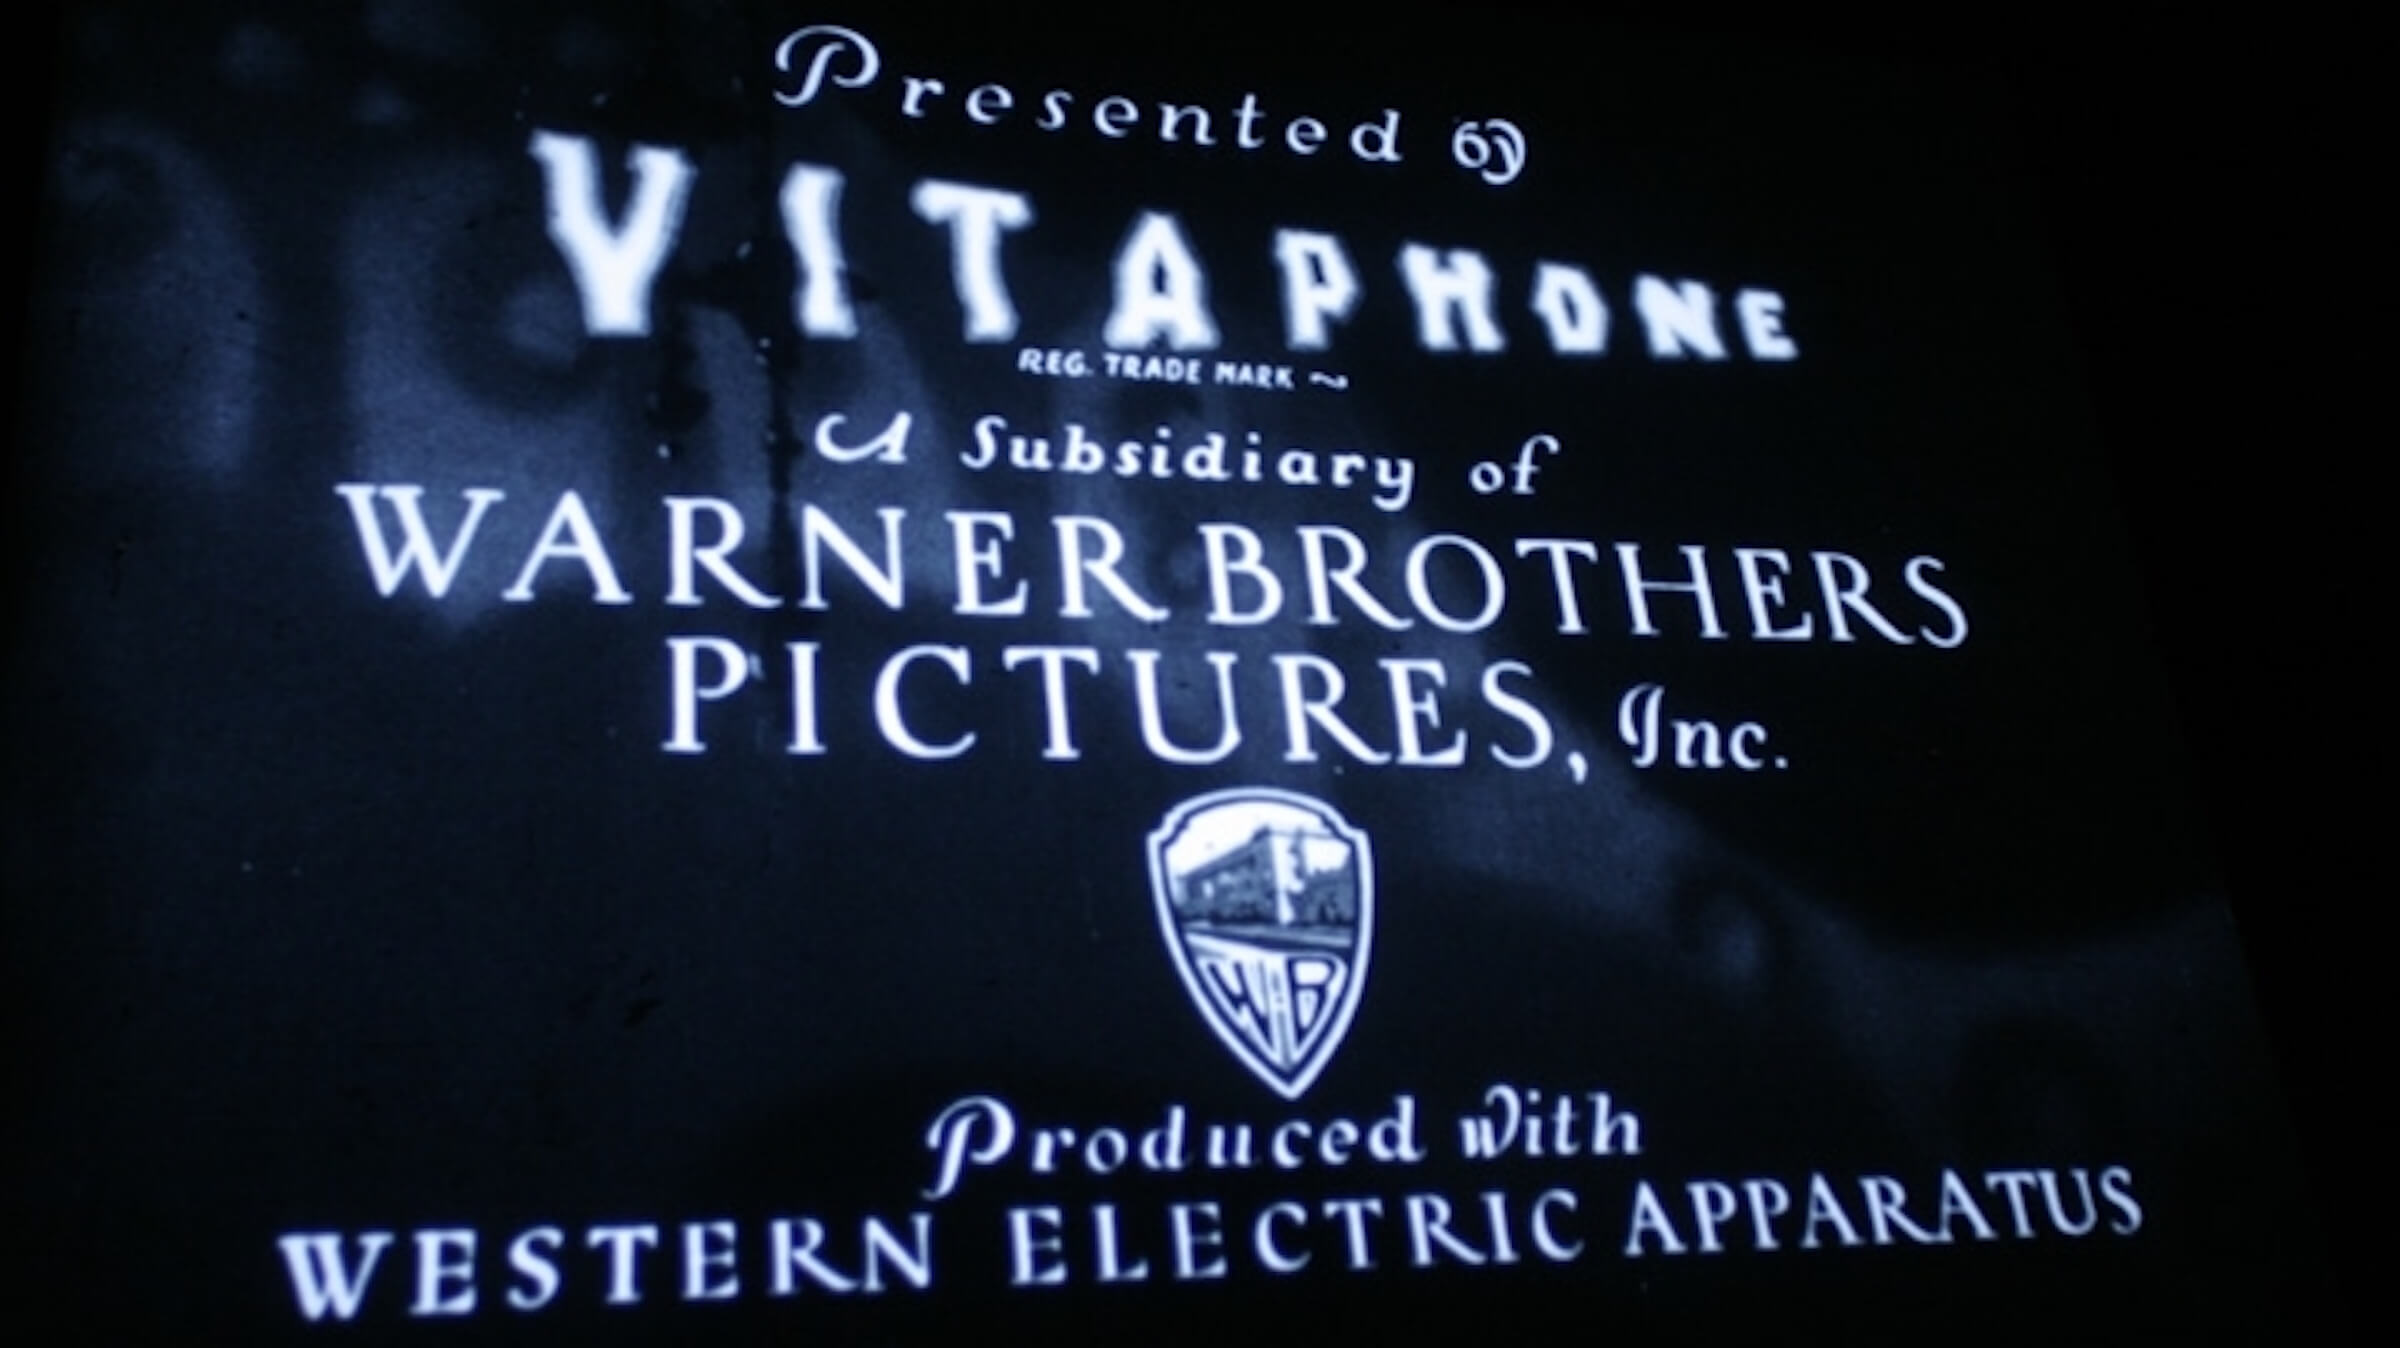 Vitaphone Vaudeville, 1926-1930